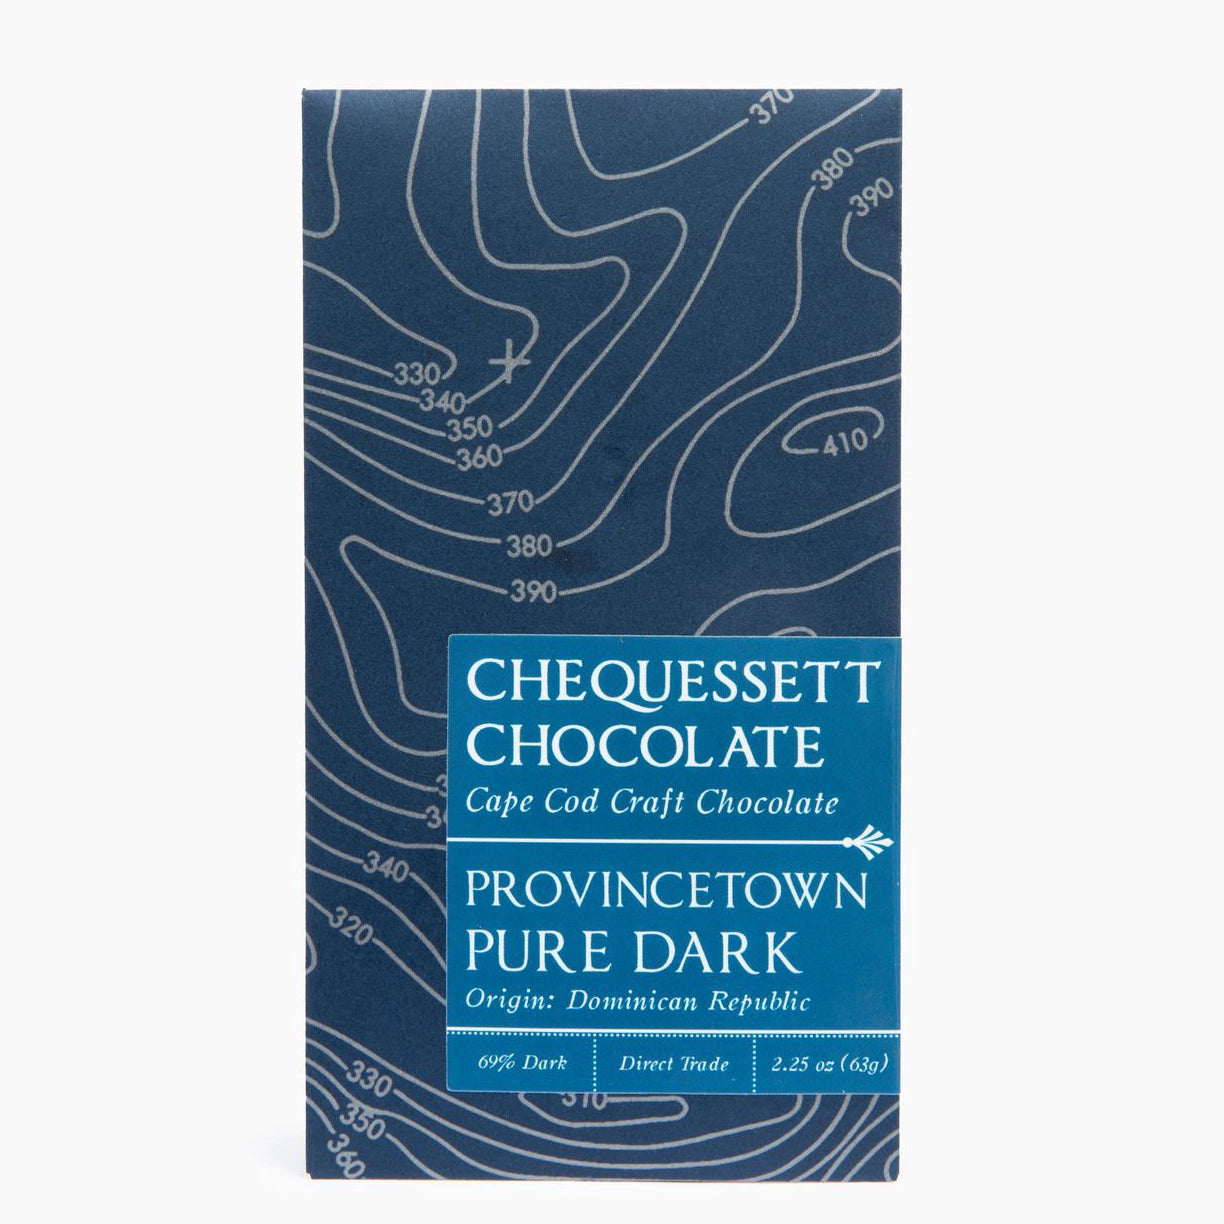 Chequessett Chocolate - Provincetown Pure Dark